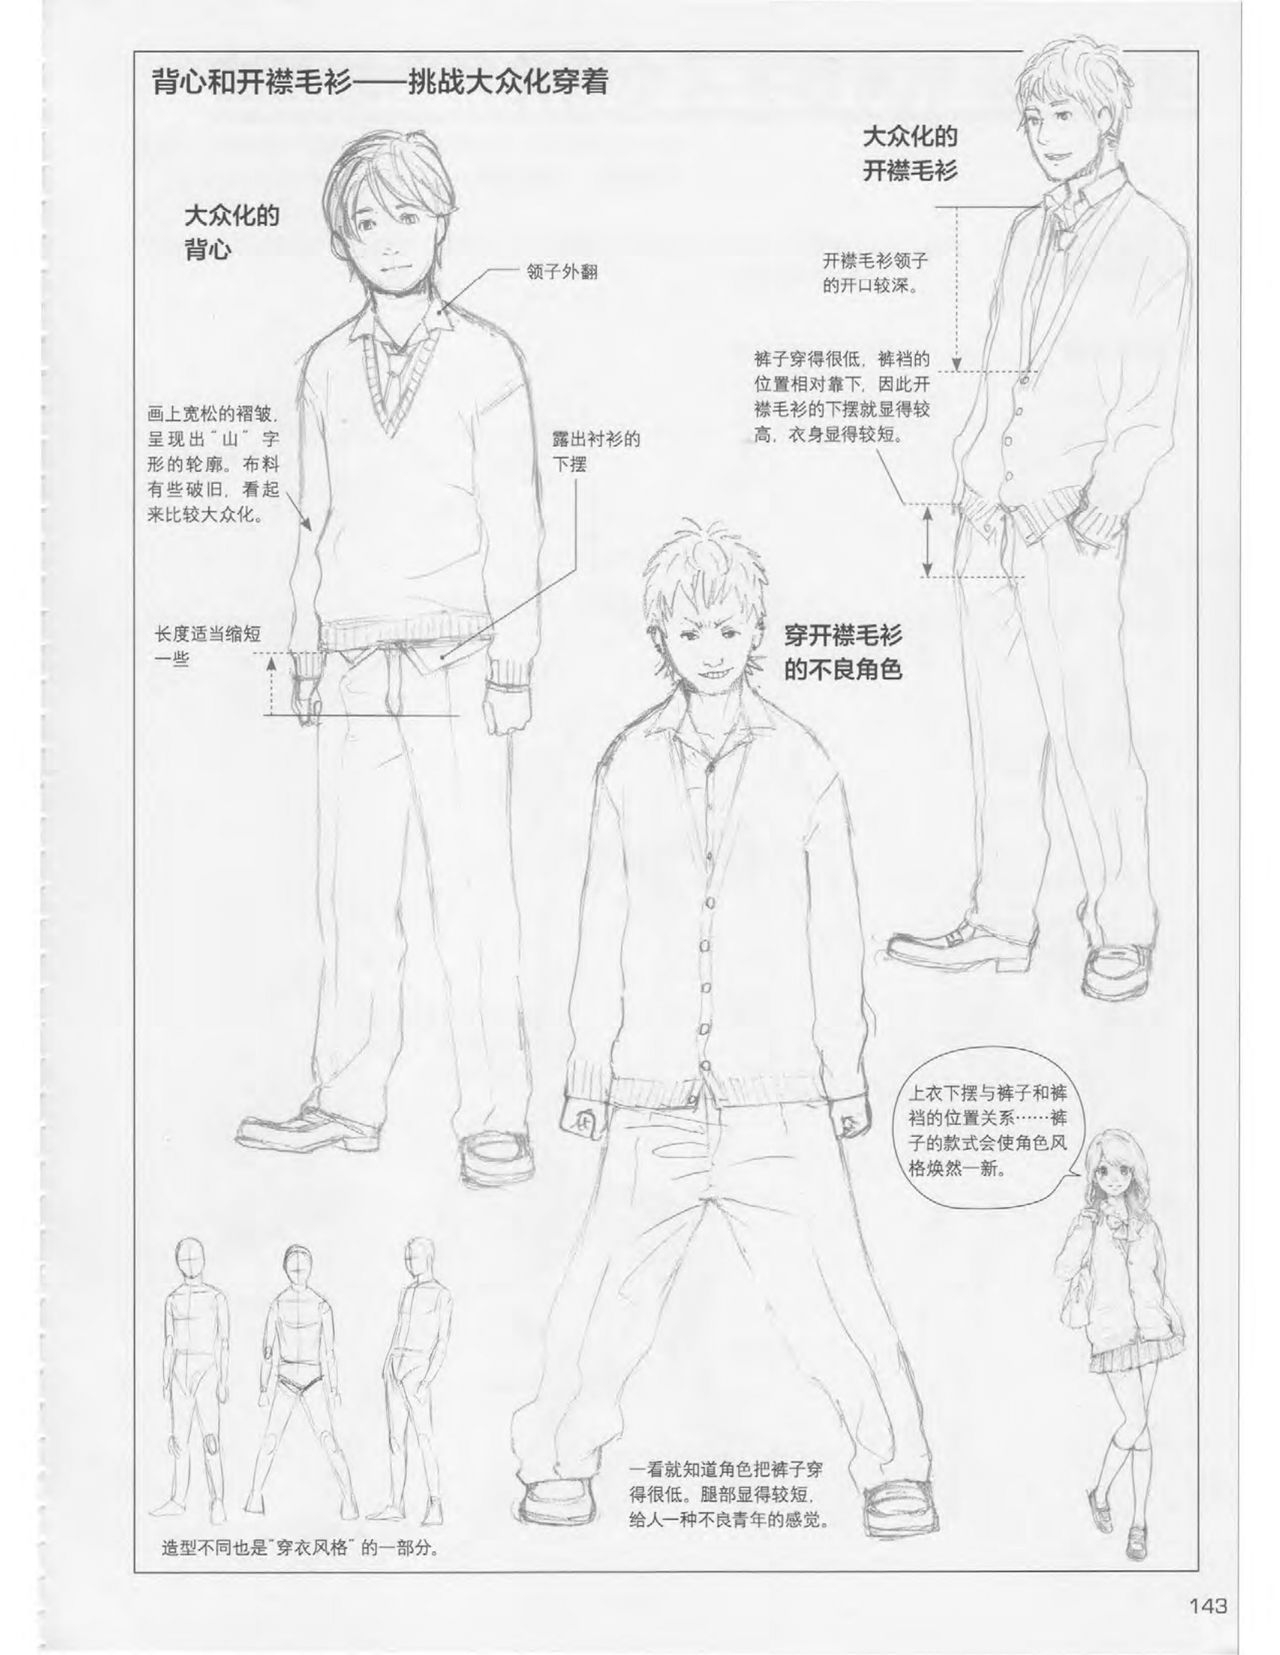 Japanese Manga Master Lecture 3: Lin Akira and Kakumaru Maru Talk About Glamorous Character Modeling 142